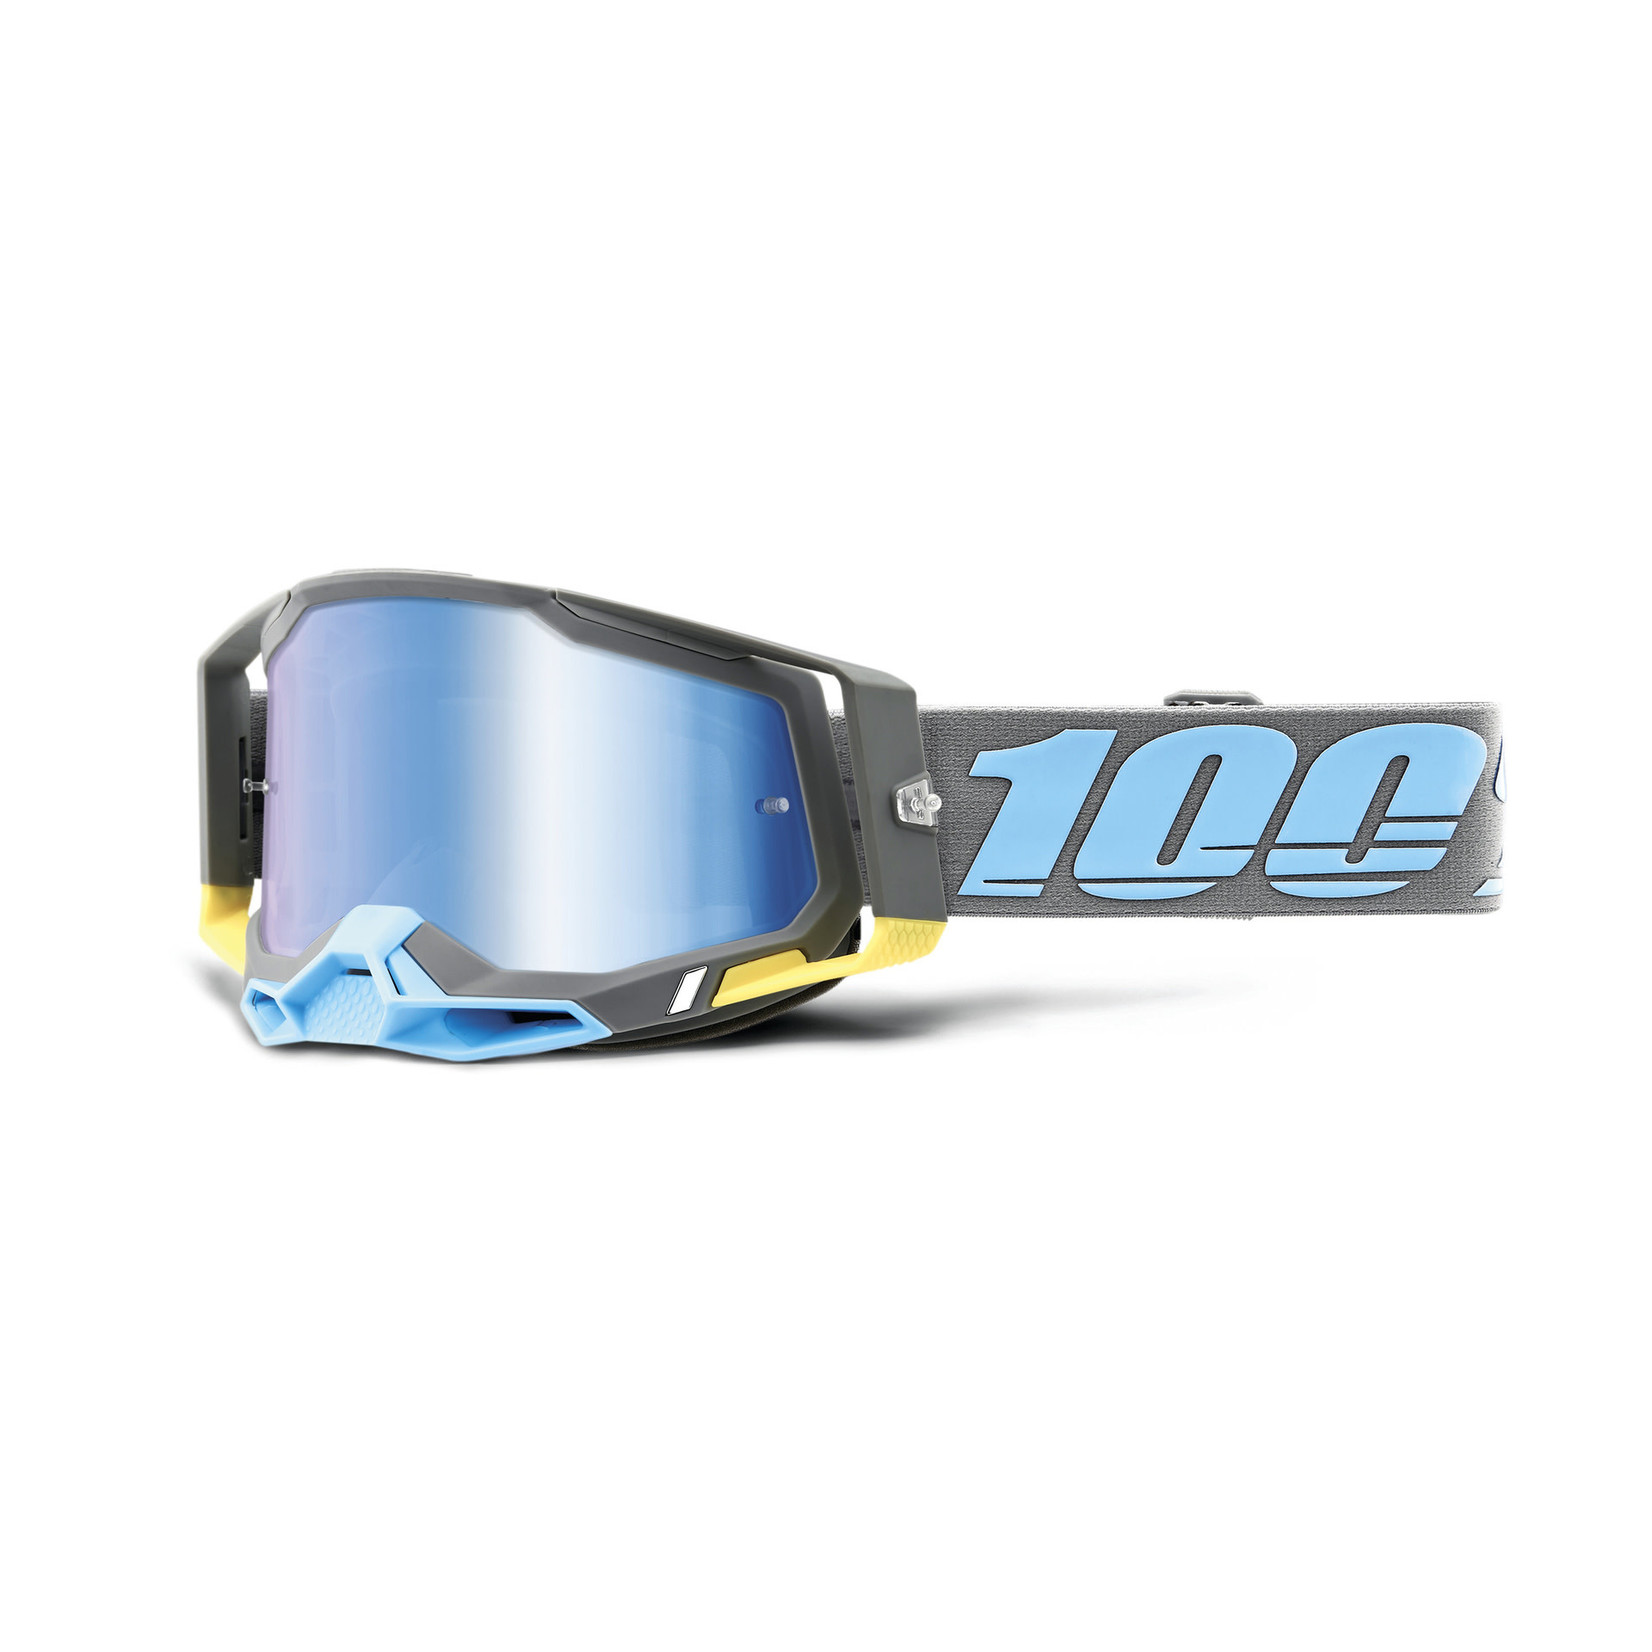 100 Percent 100% Racecraft 2 Bike/Cycling Goggle - Trinidad - Mirror Blue